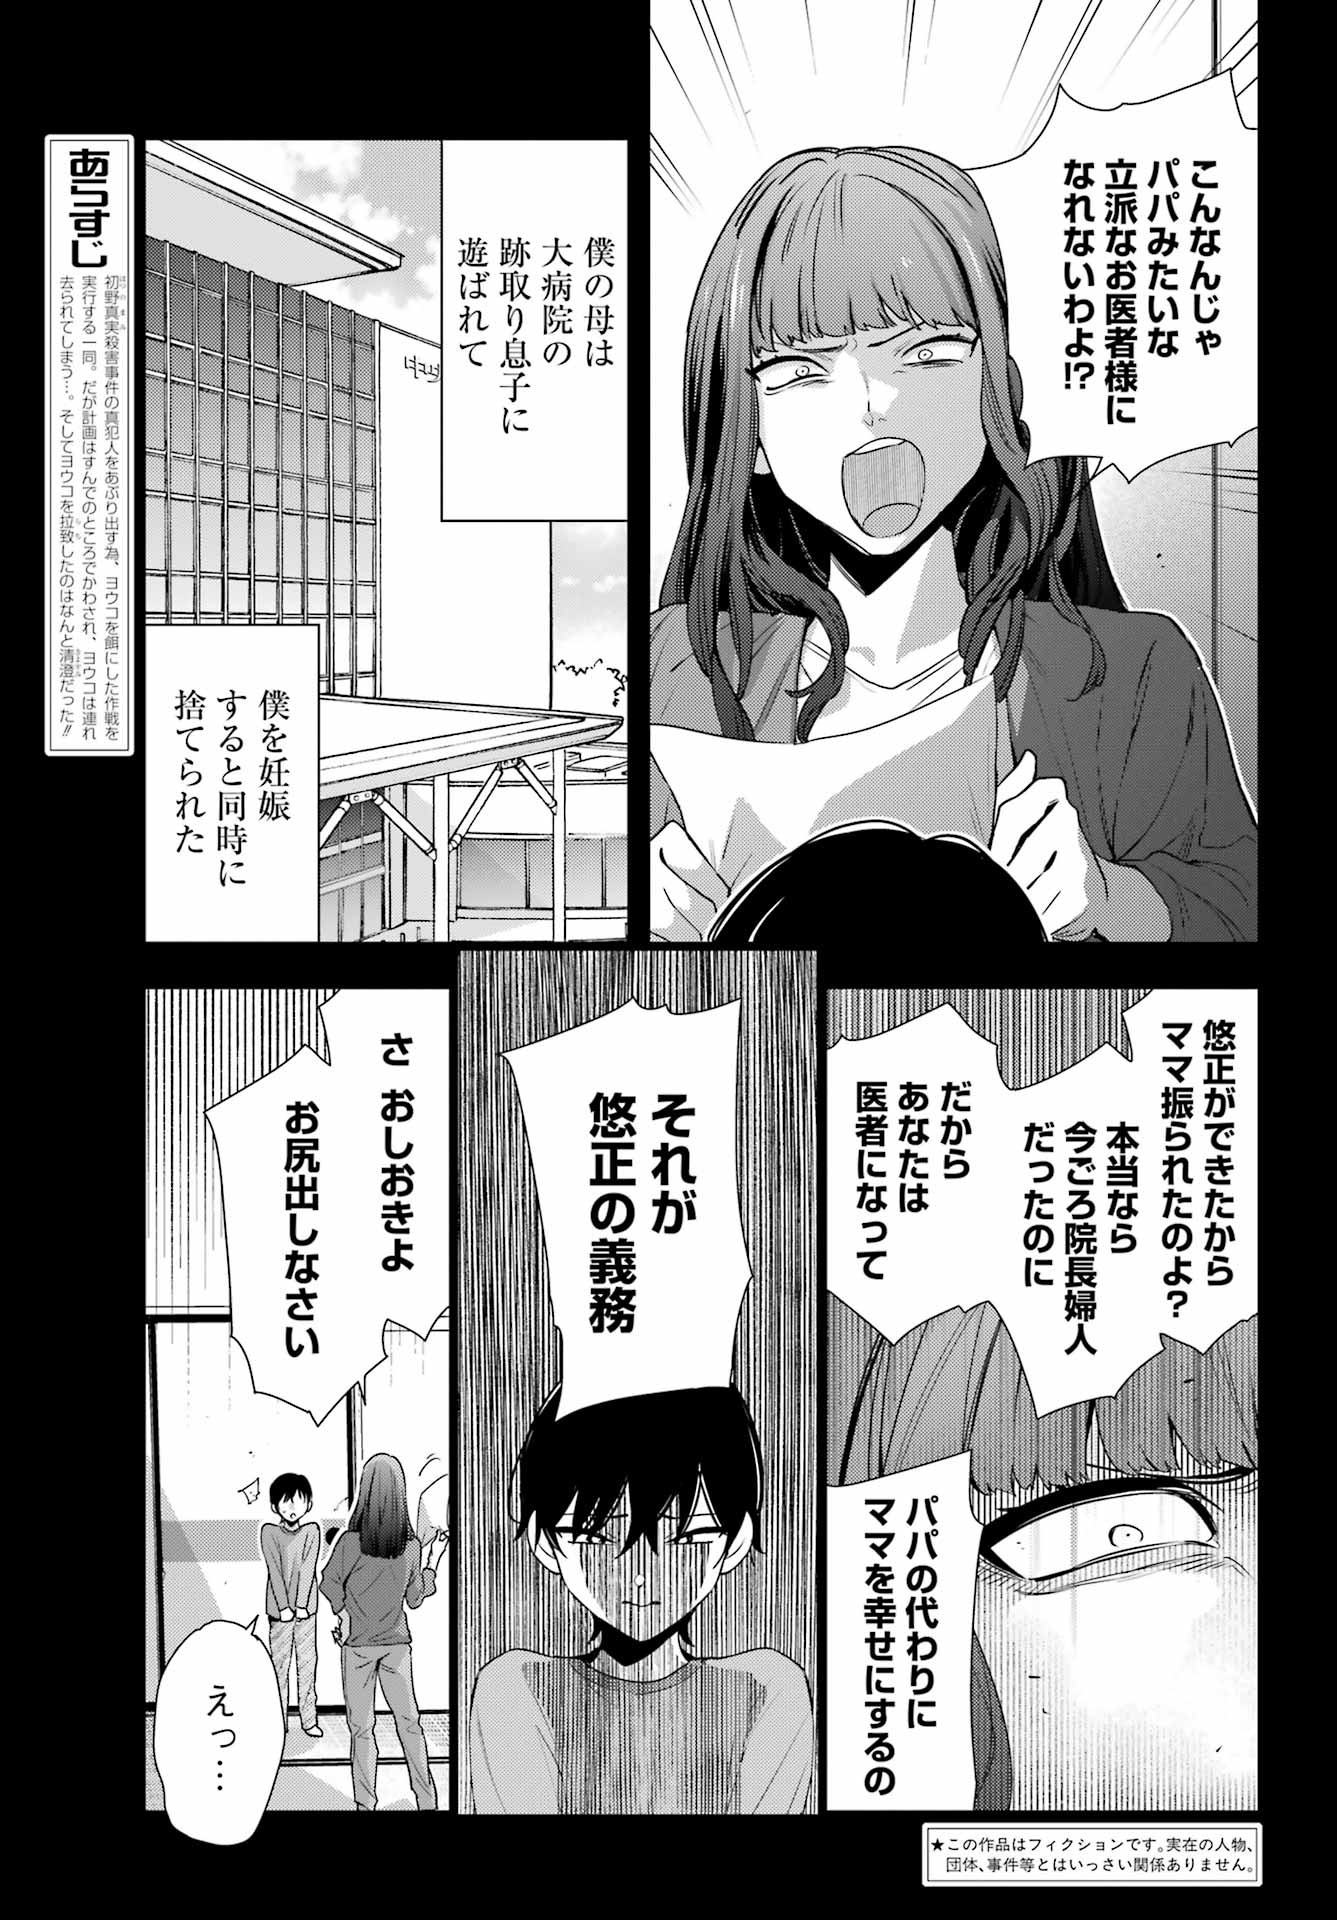 Watashi No Keiyaku Kekkon Ni Wa Uso Ga Aru - Chapter 18 - Page 3